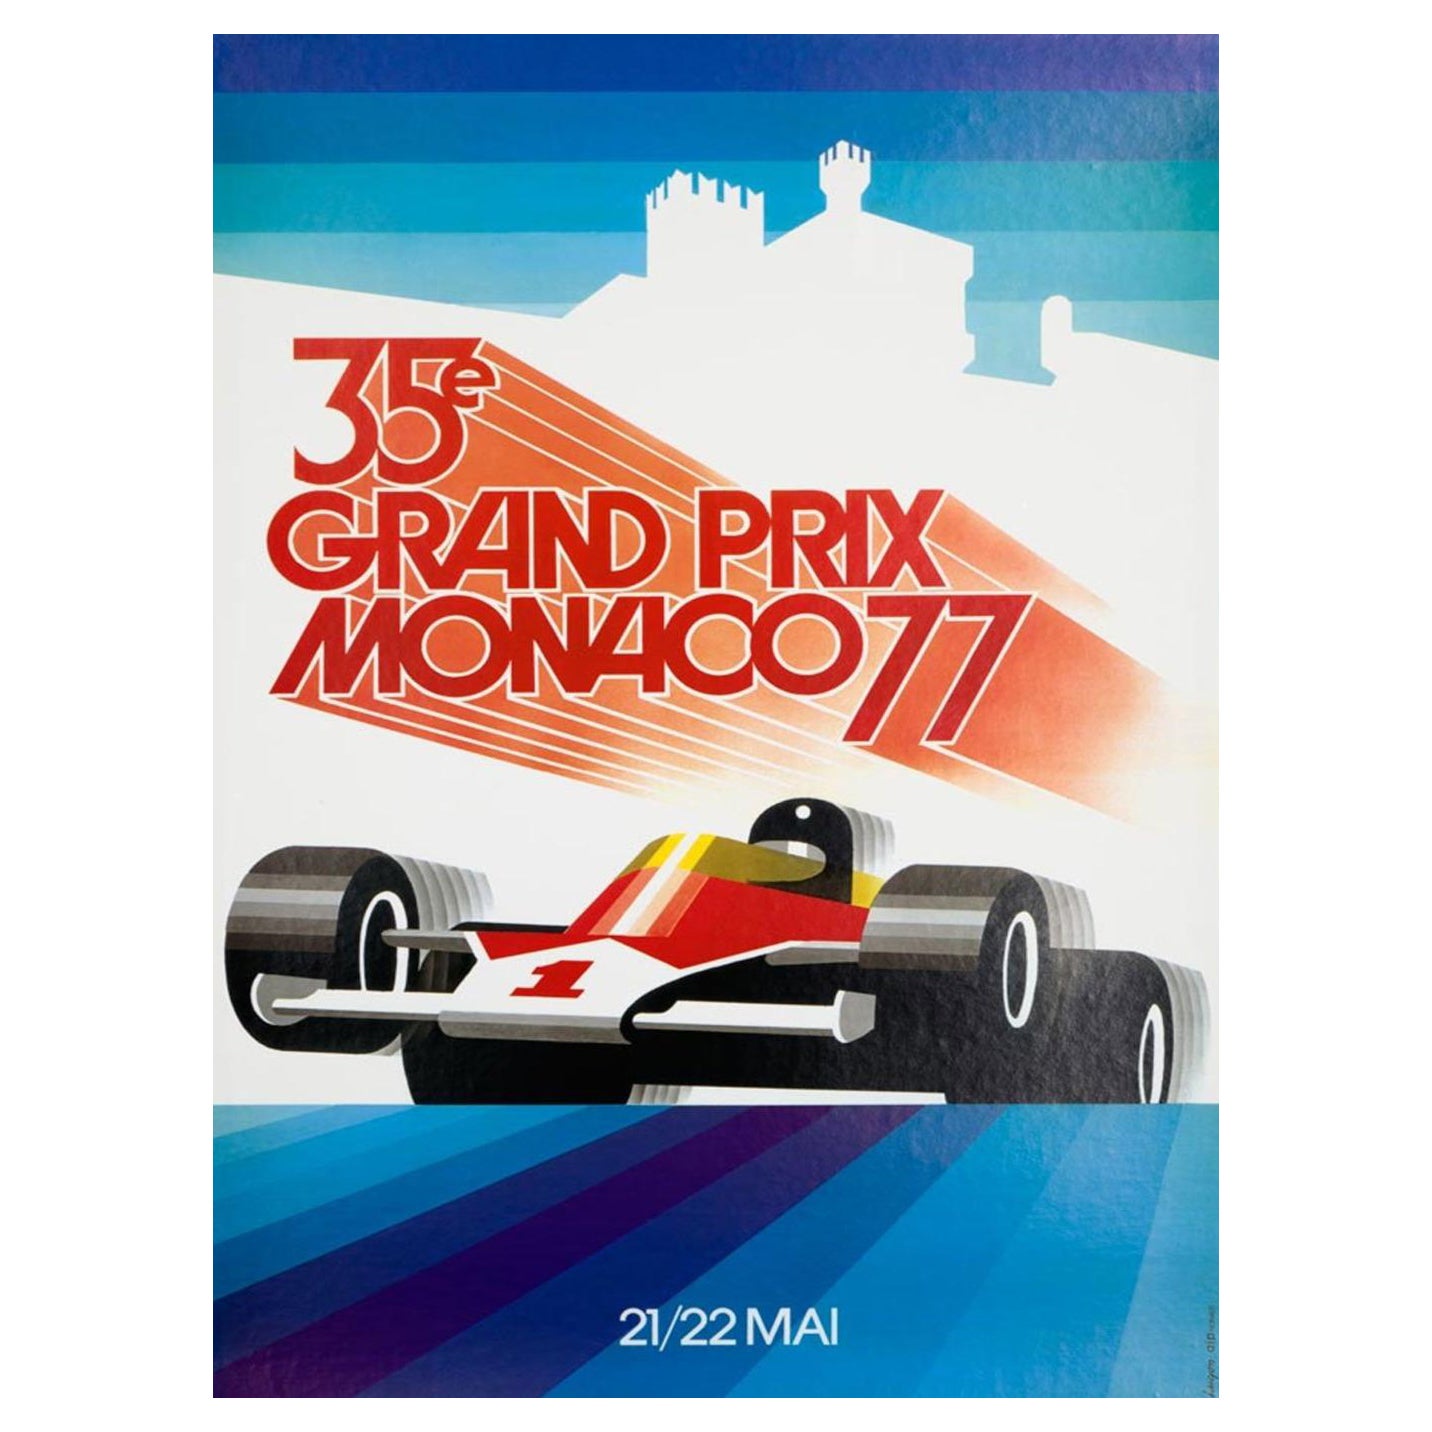 Affiche vintage originale du Grand Prix de Monaco de 1977